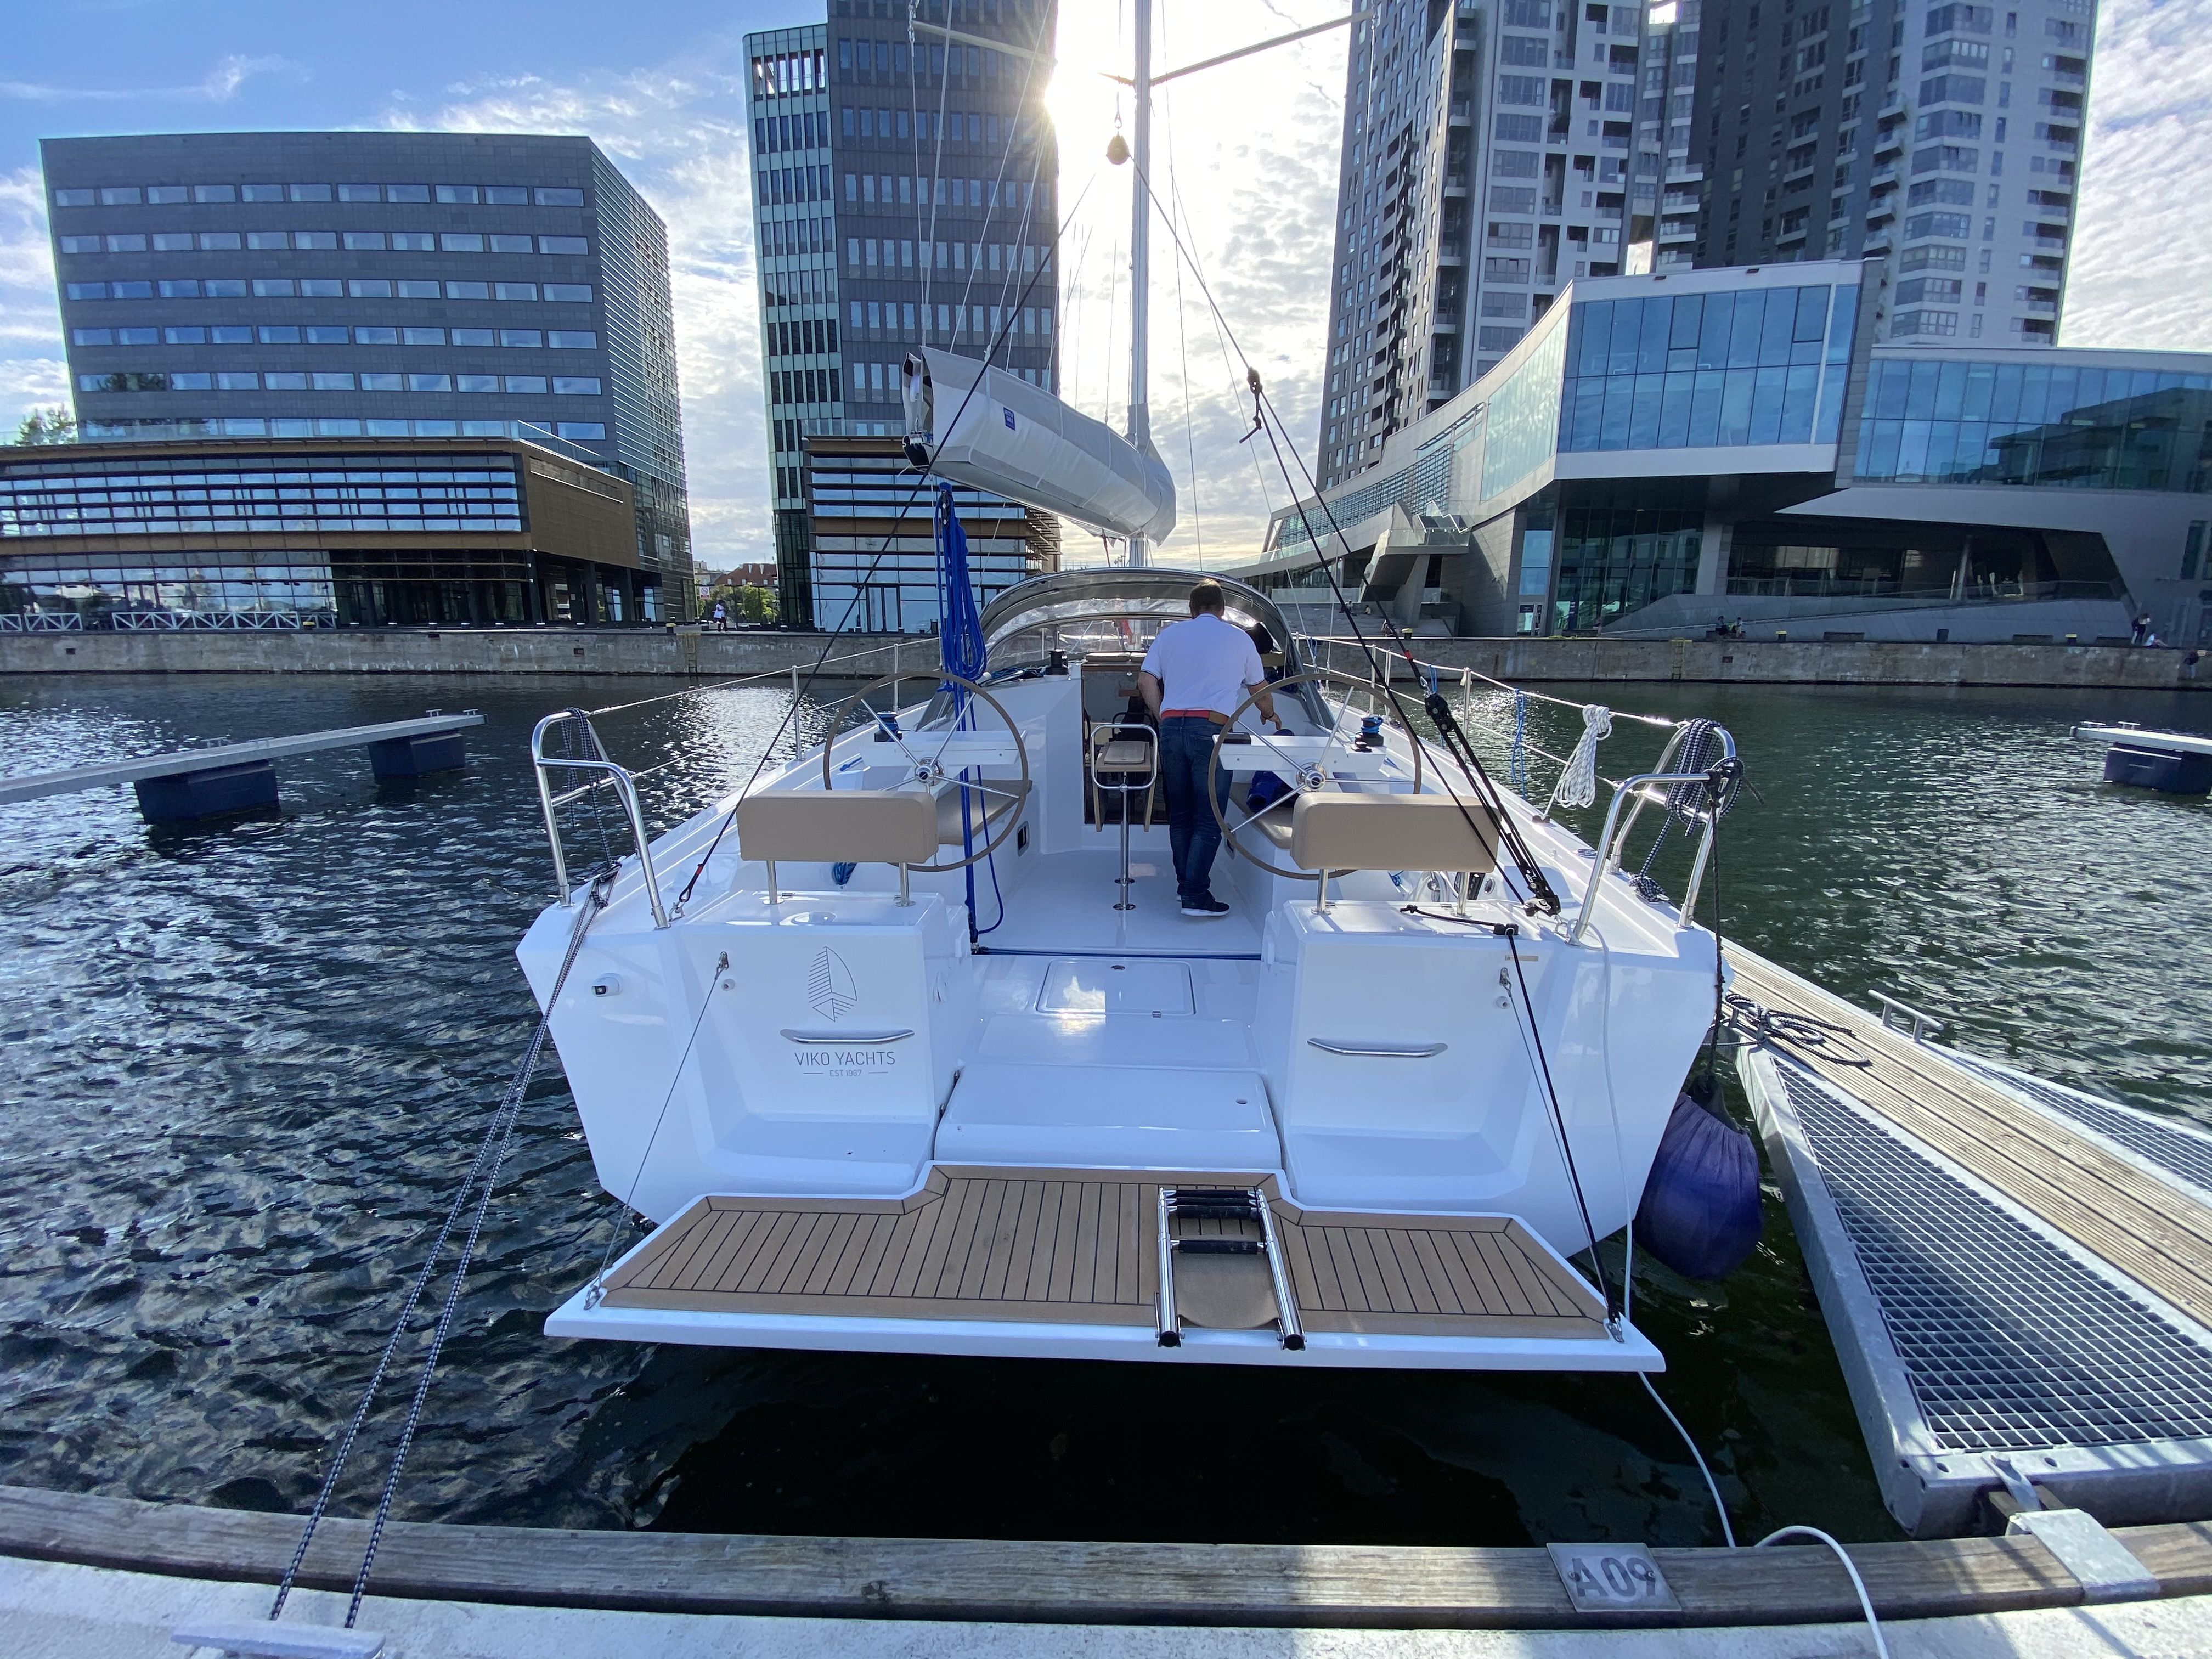 VIKO S 35 yacht kil